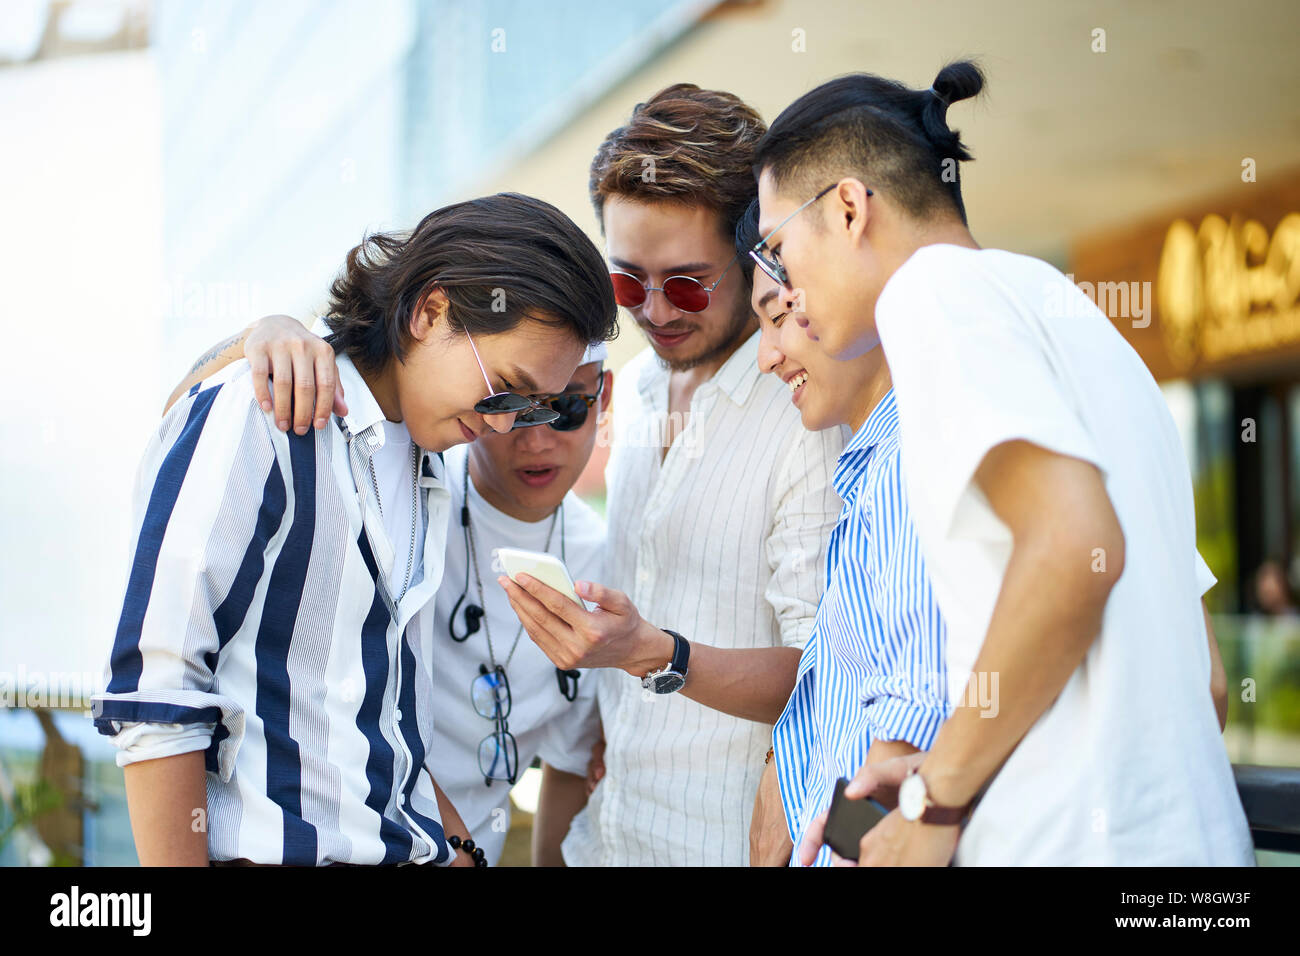 Joven asiático hombres adultos utilizando los medios sociales mirando el teléfono móvil Foto de stock